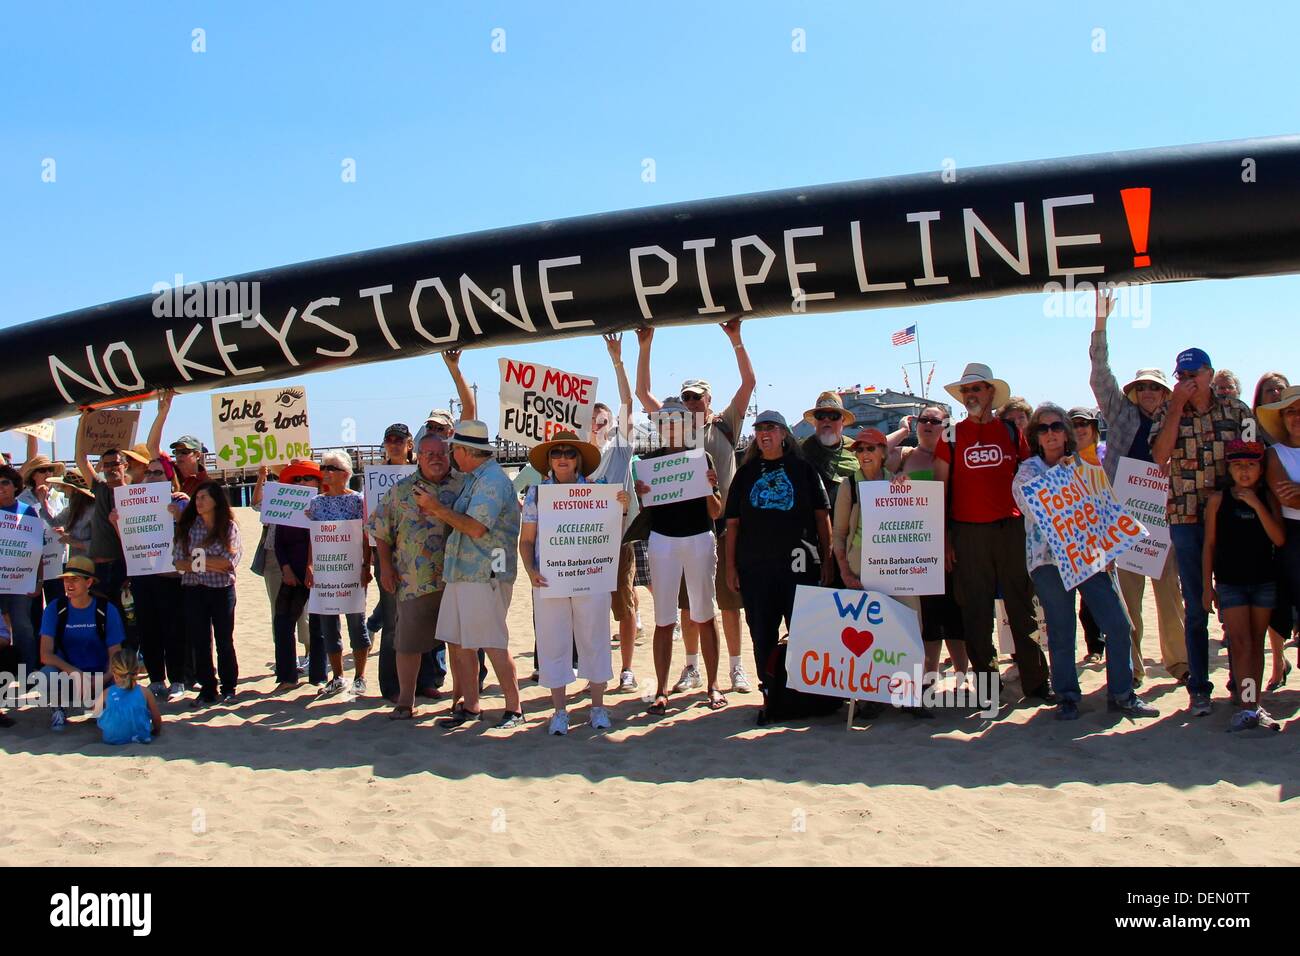 keystone-pipeline-protest-in-santa-barba